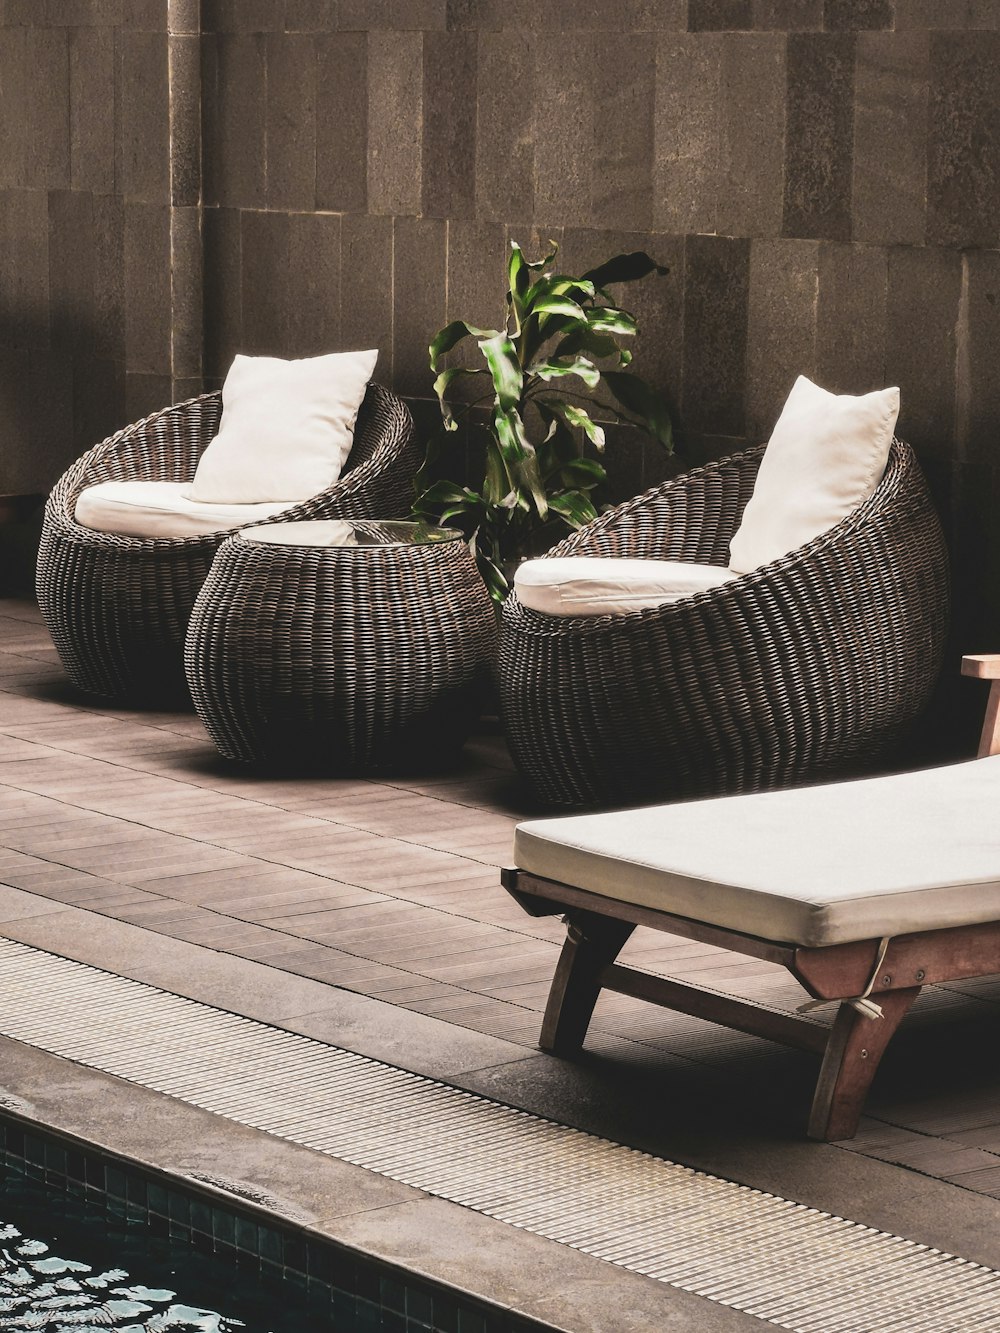 quelques chaises et une plante sur une terrasse